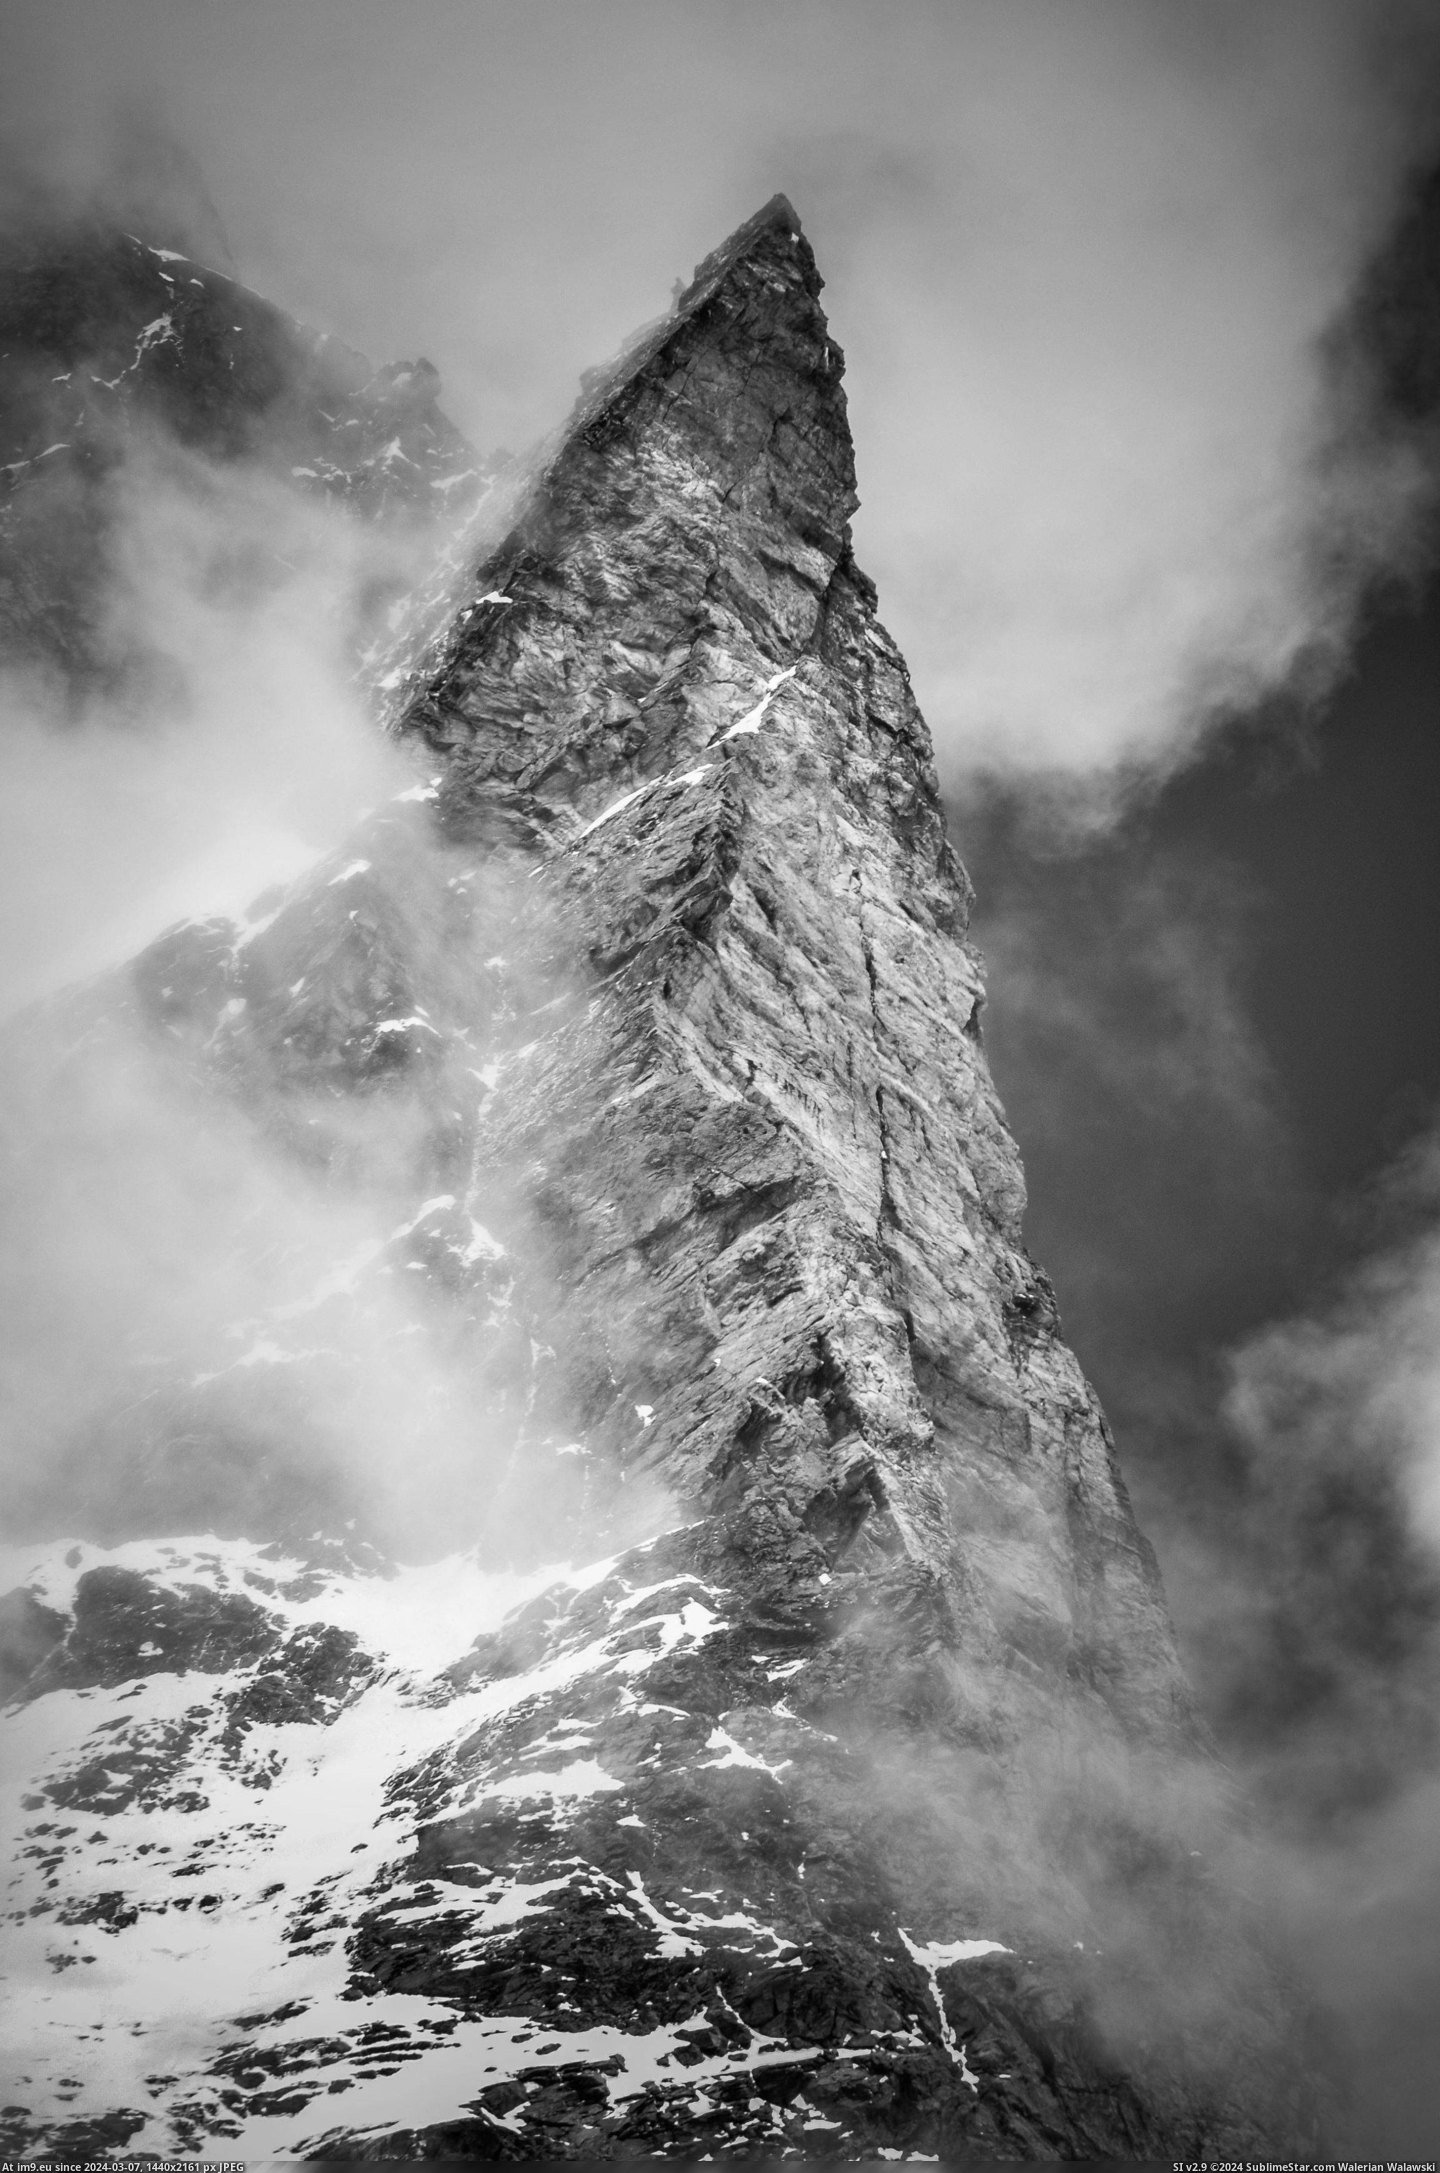  #Matterhorn  [Pics] The Matterhorn Pic. (Bild von album My r/PICS favs))